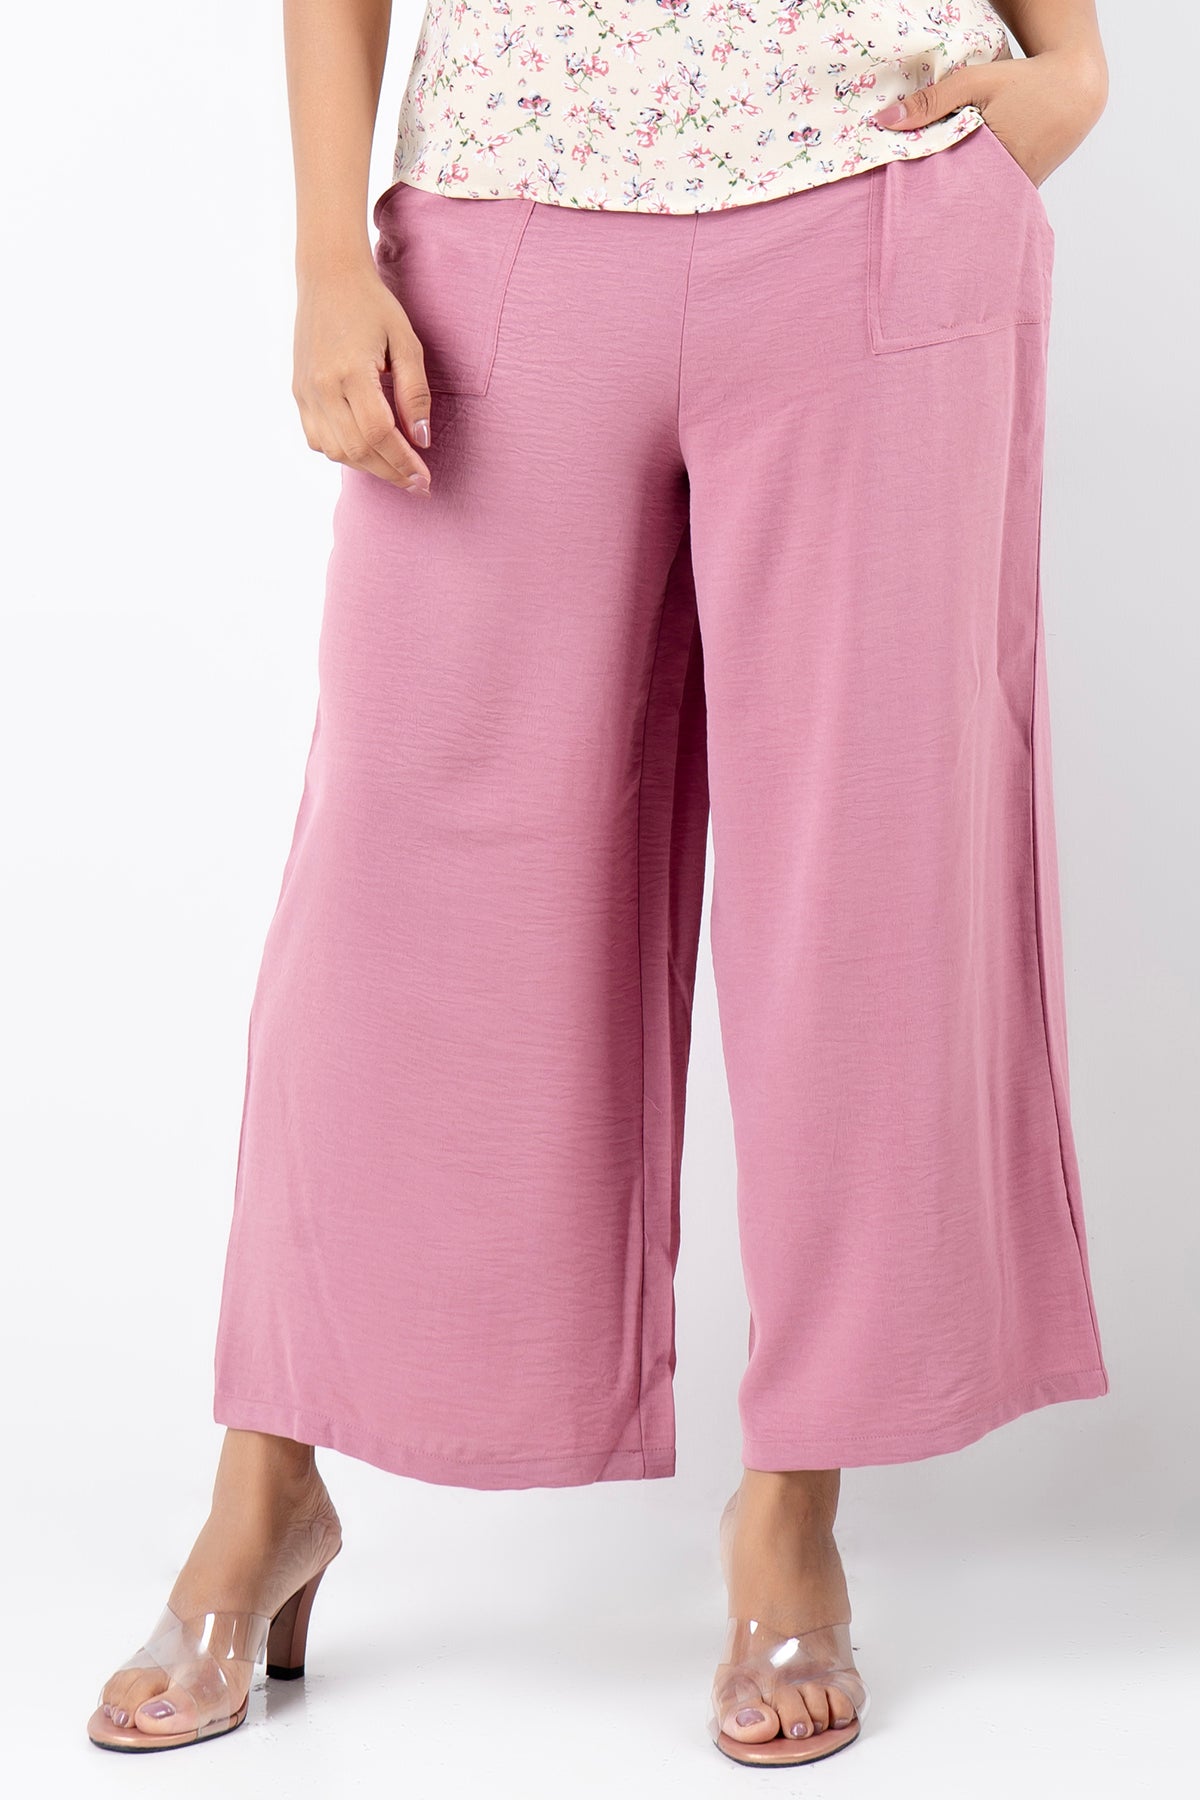 Envogue Women's Plain Casual Pant